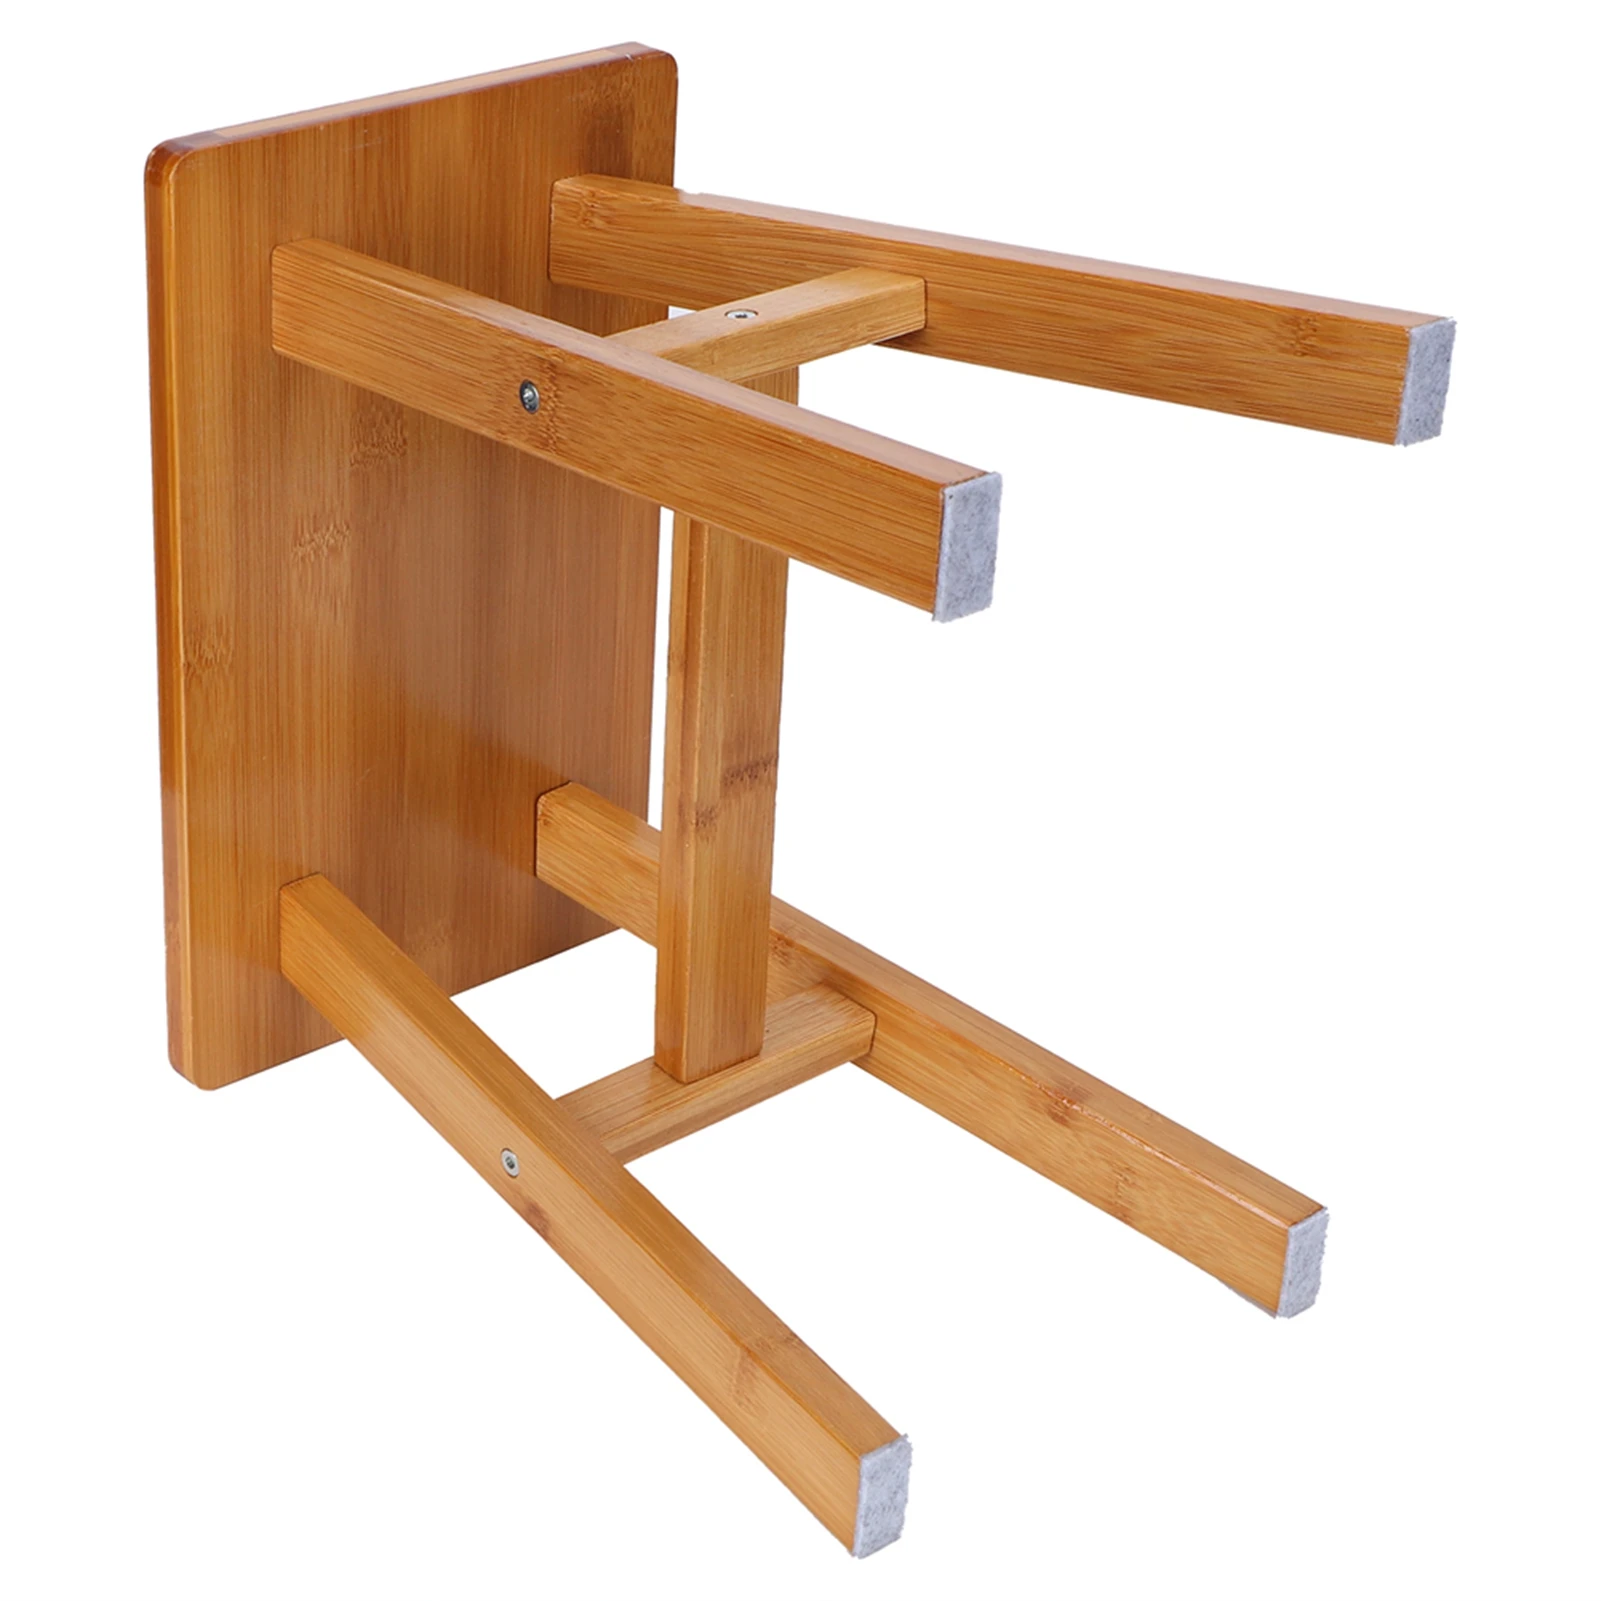 XPSSJMU Taburete de asiento infantil multiusos pequeño taburete de bambú  robusto banco bajo para niños para el hogar suministros de sala de estar